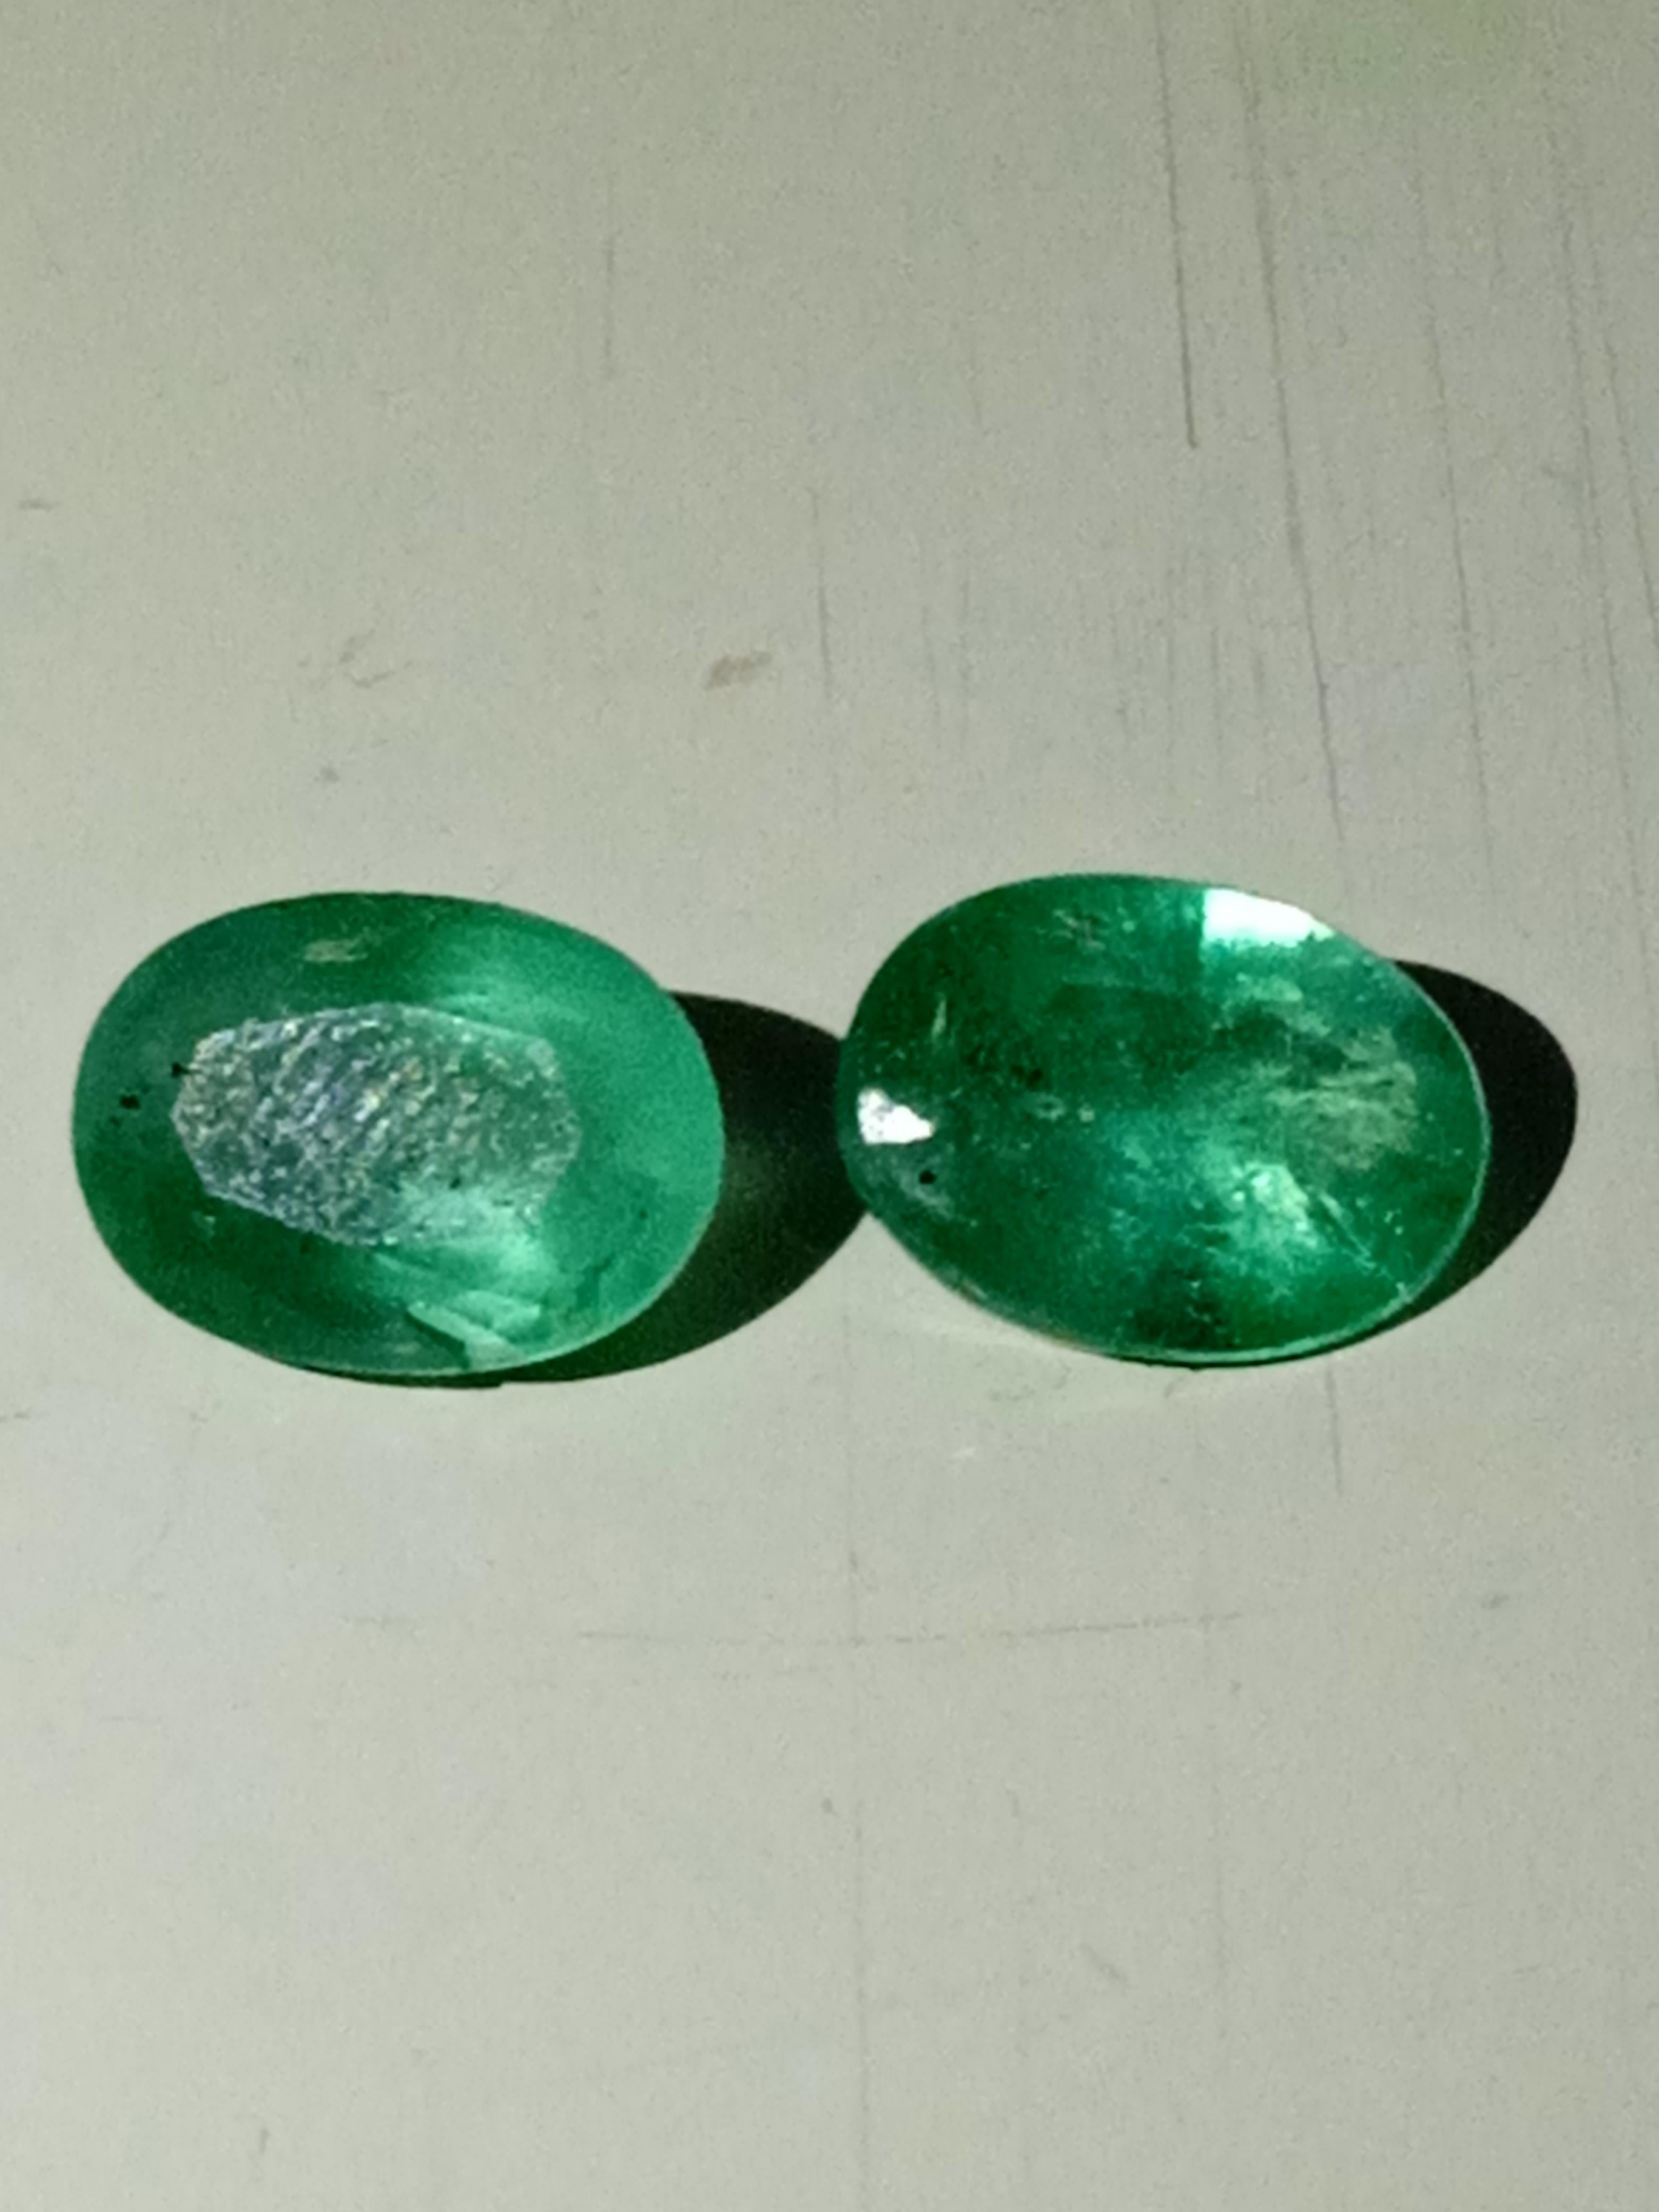 Natural Zambia emerald pair 3.7 carats